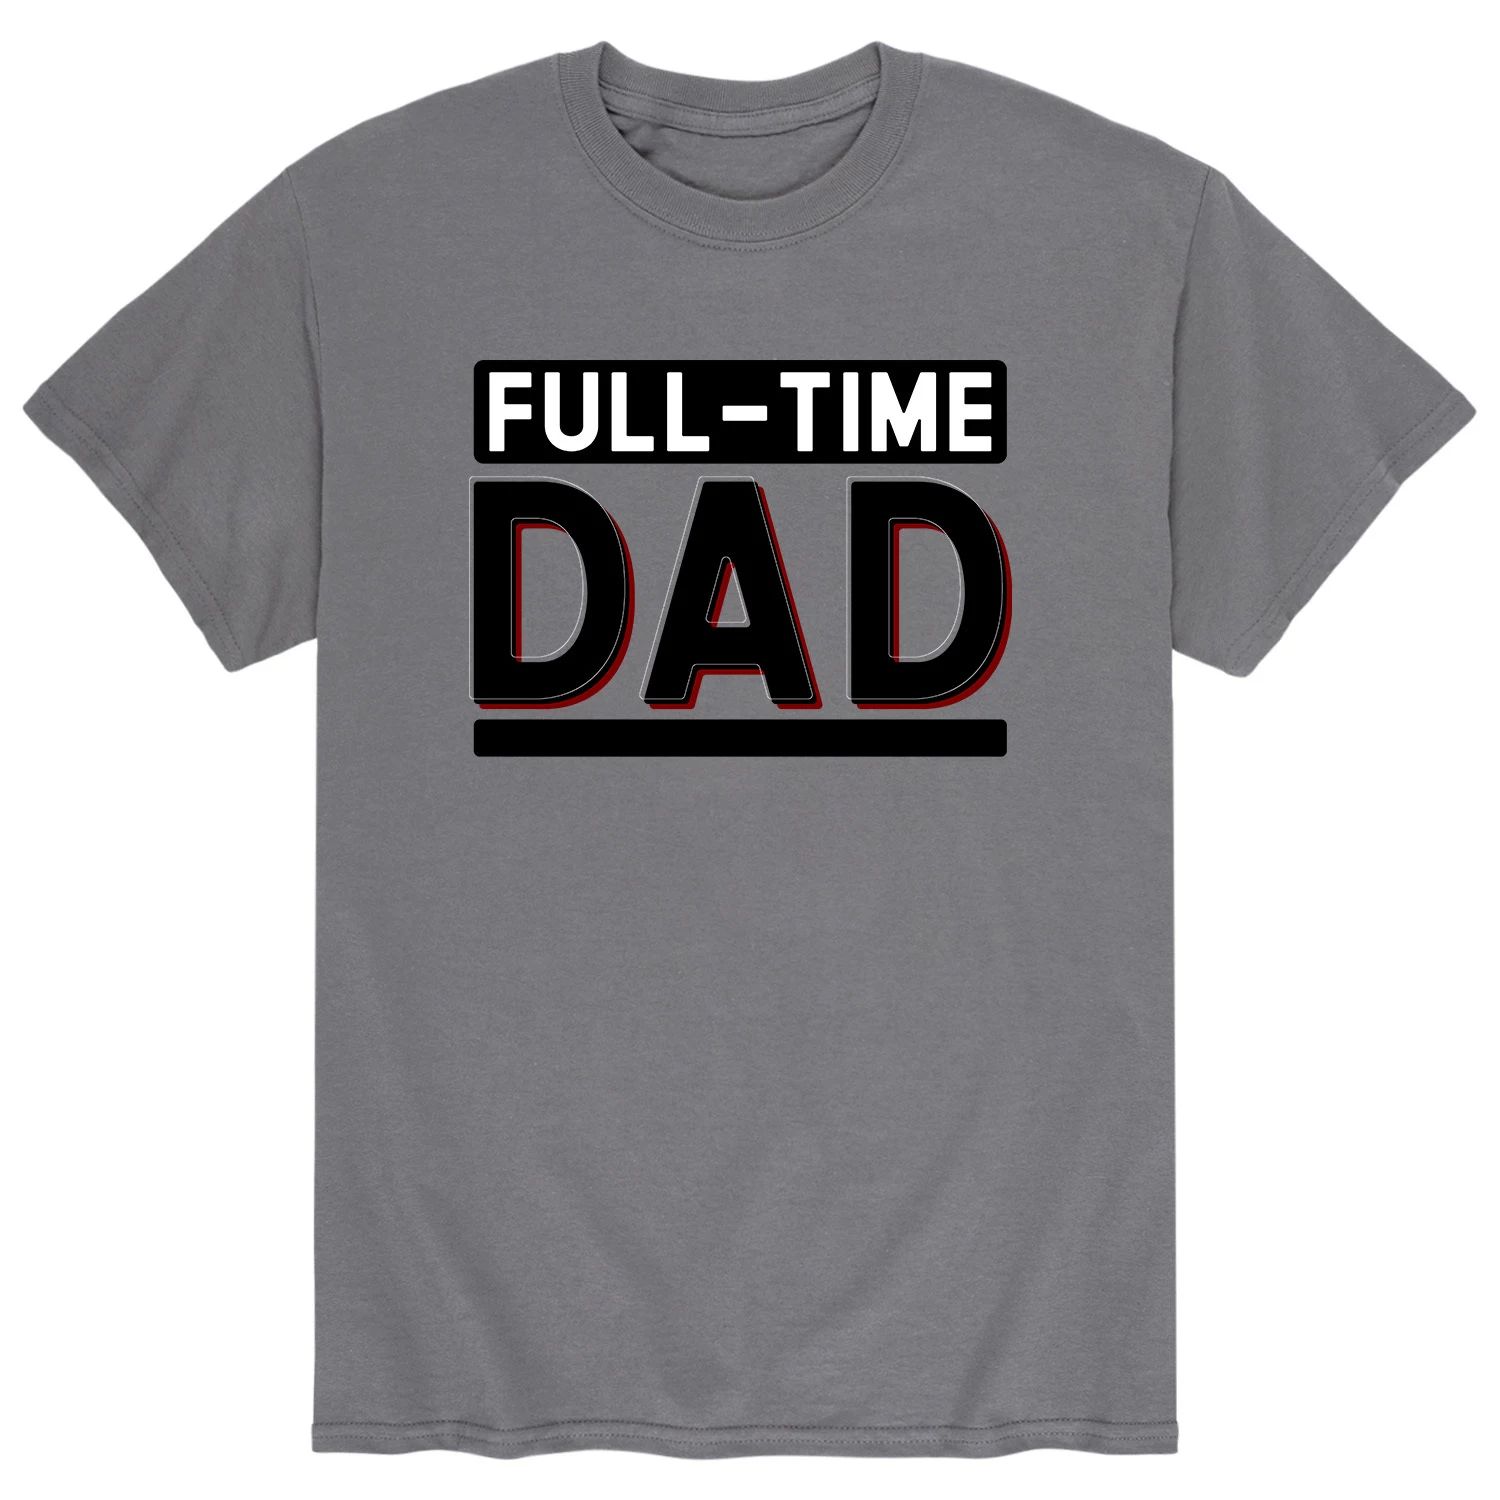 цена Мужская футболка для папы на полный рабочий день Licensed Character